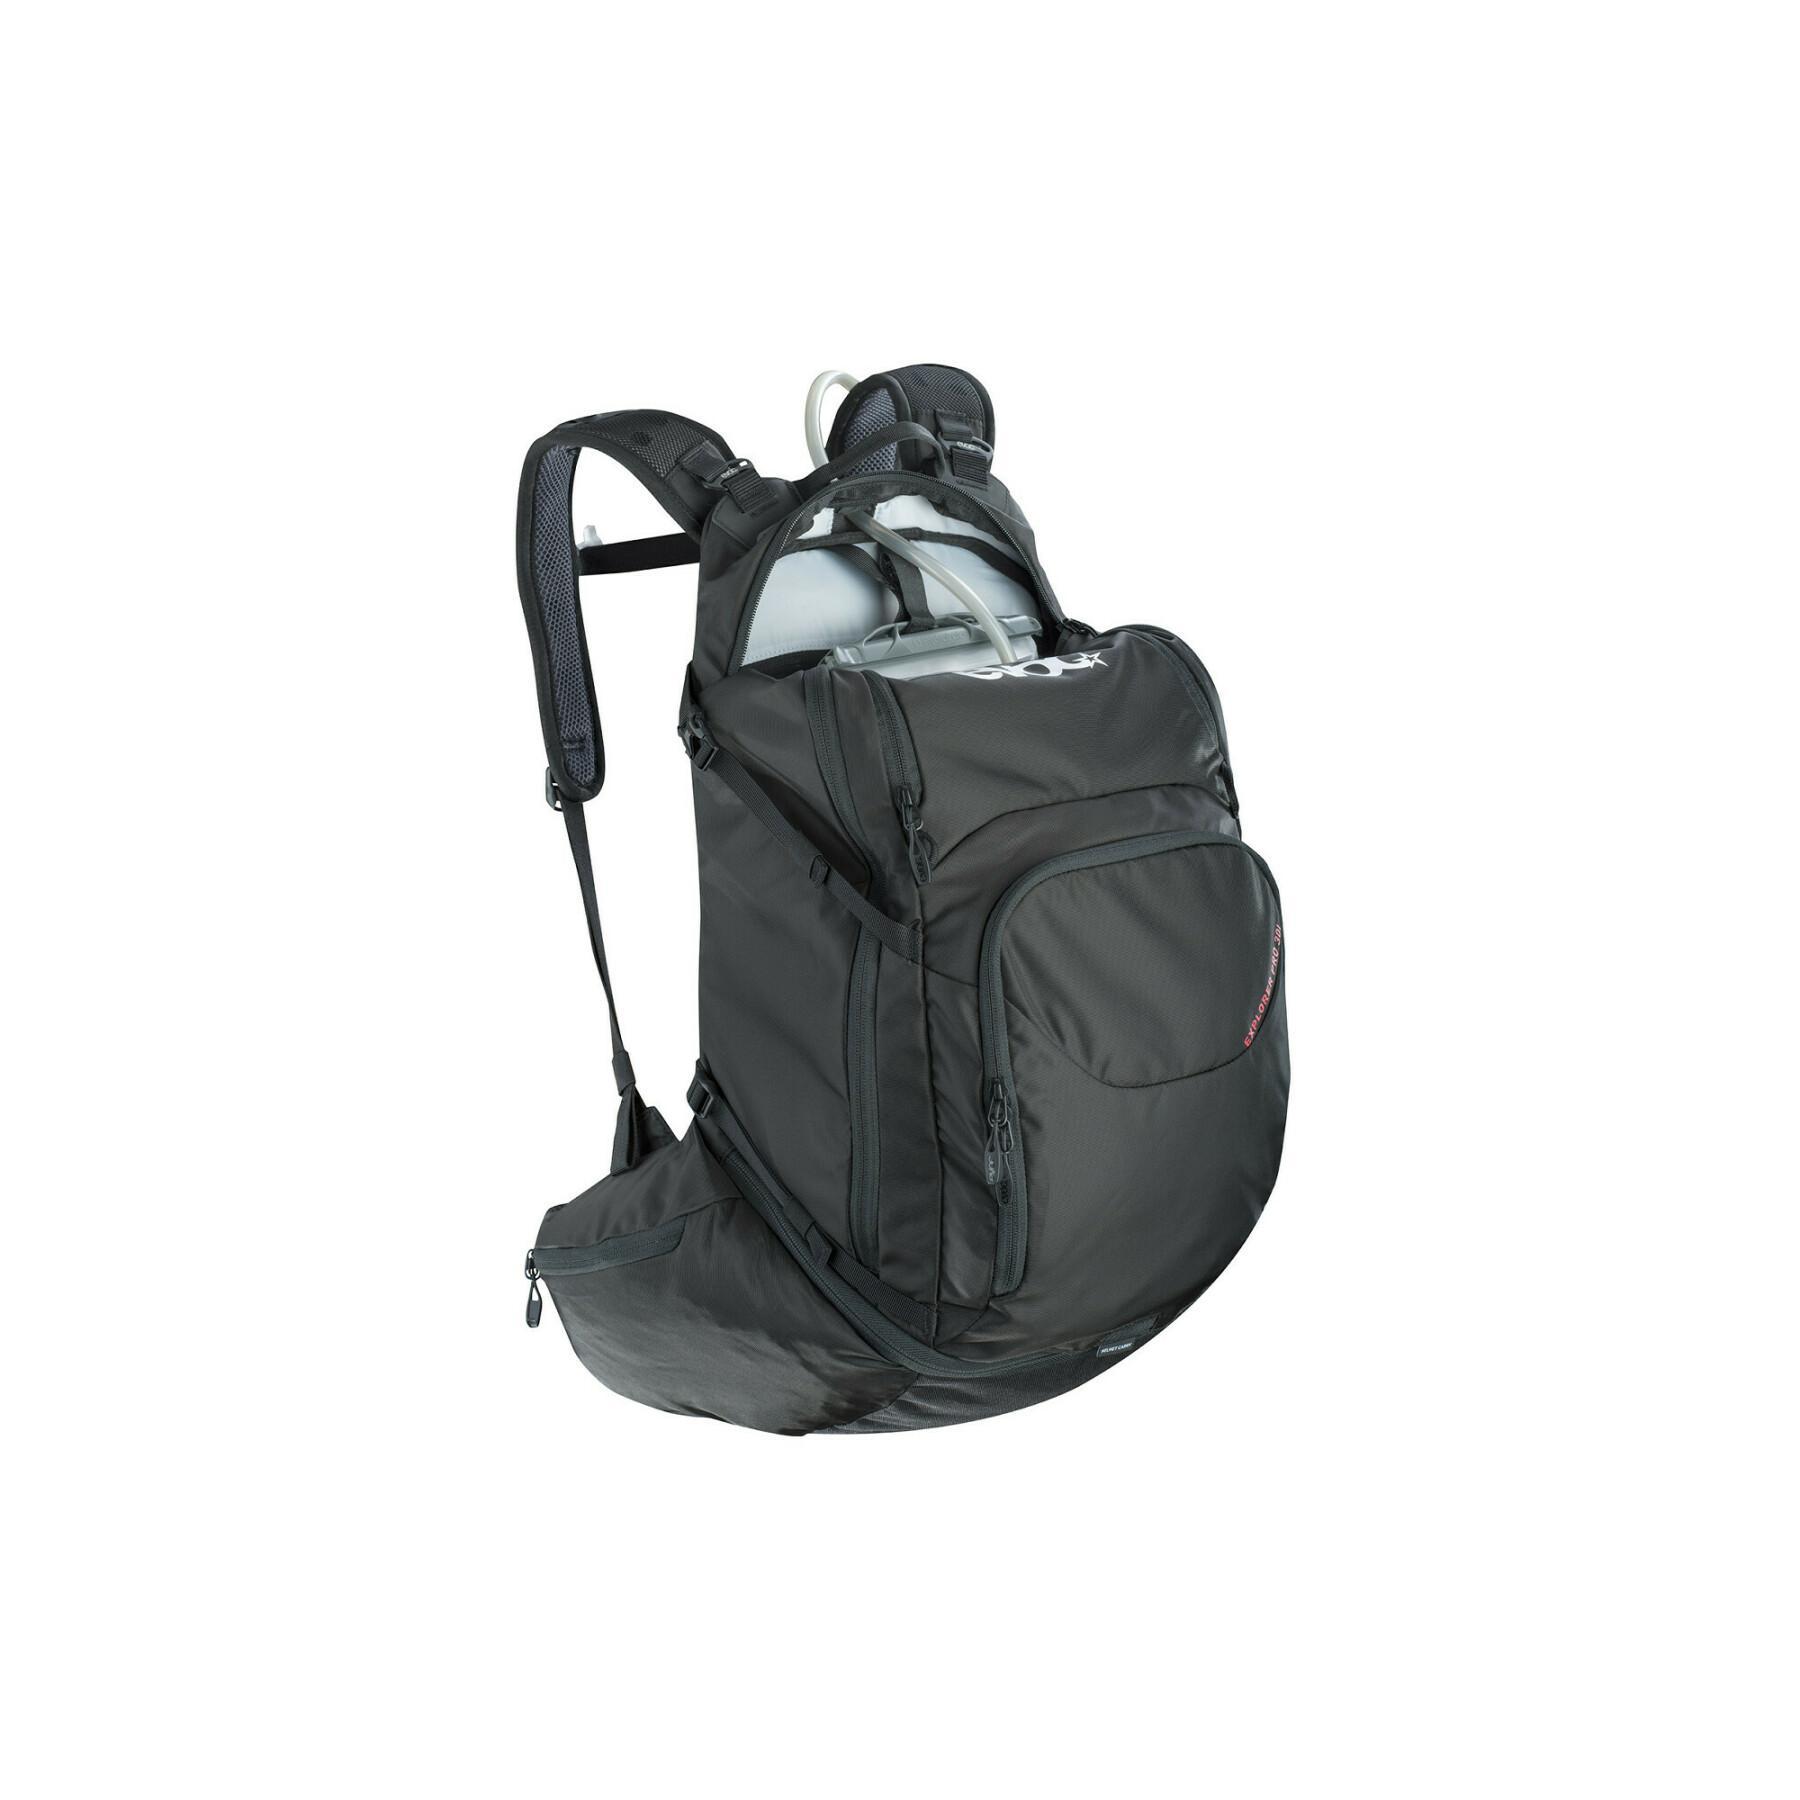 Backpack Evoc explorer pro